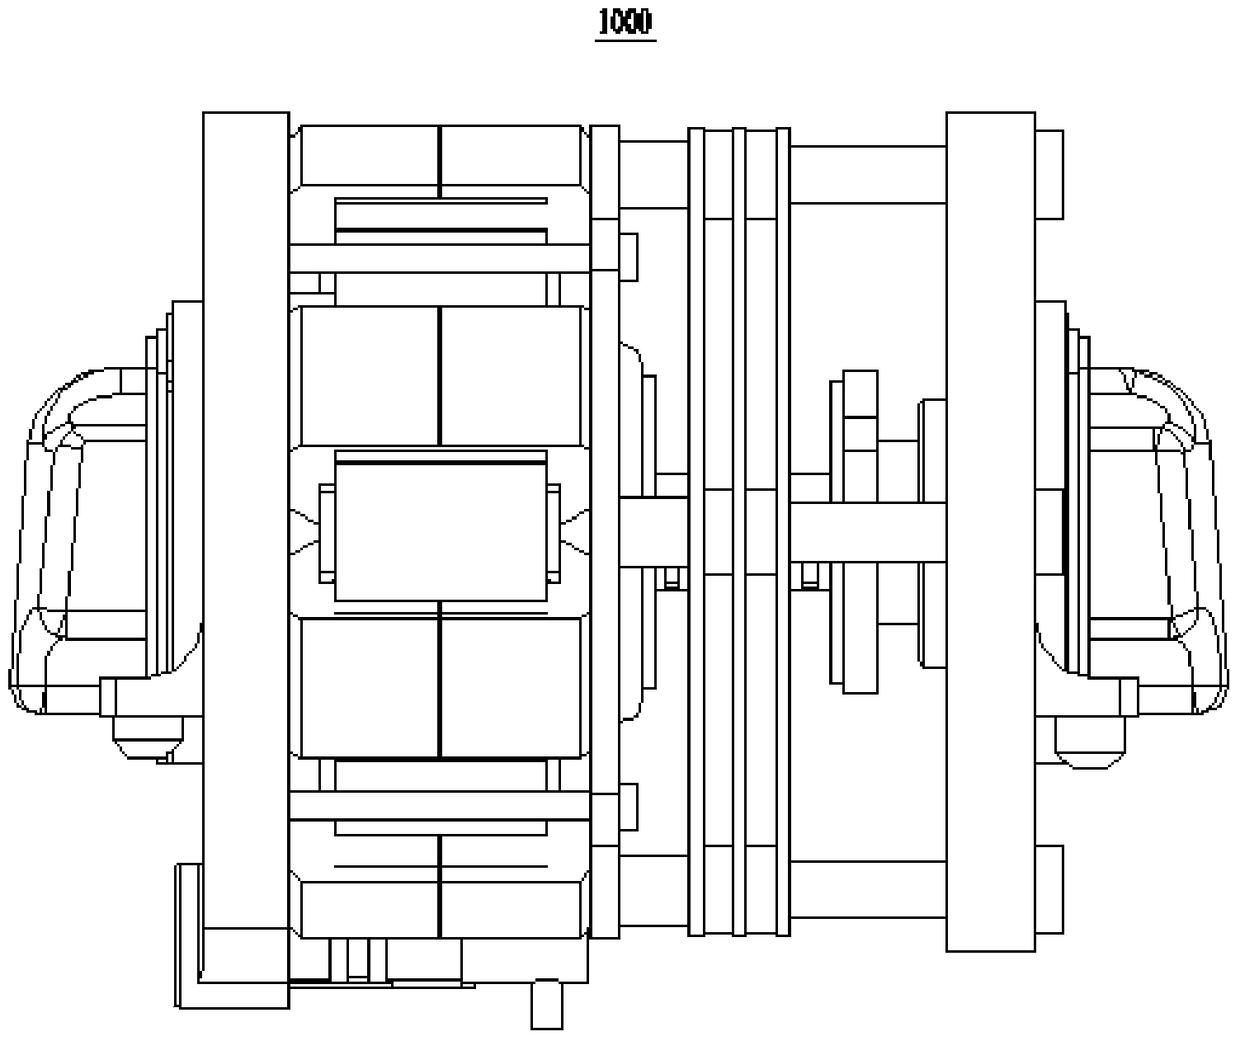 Linear compressor and refrigeration equipment having same